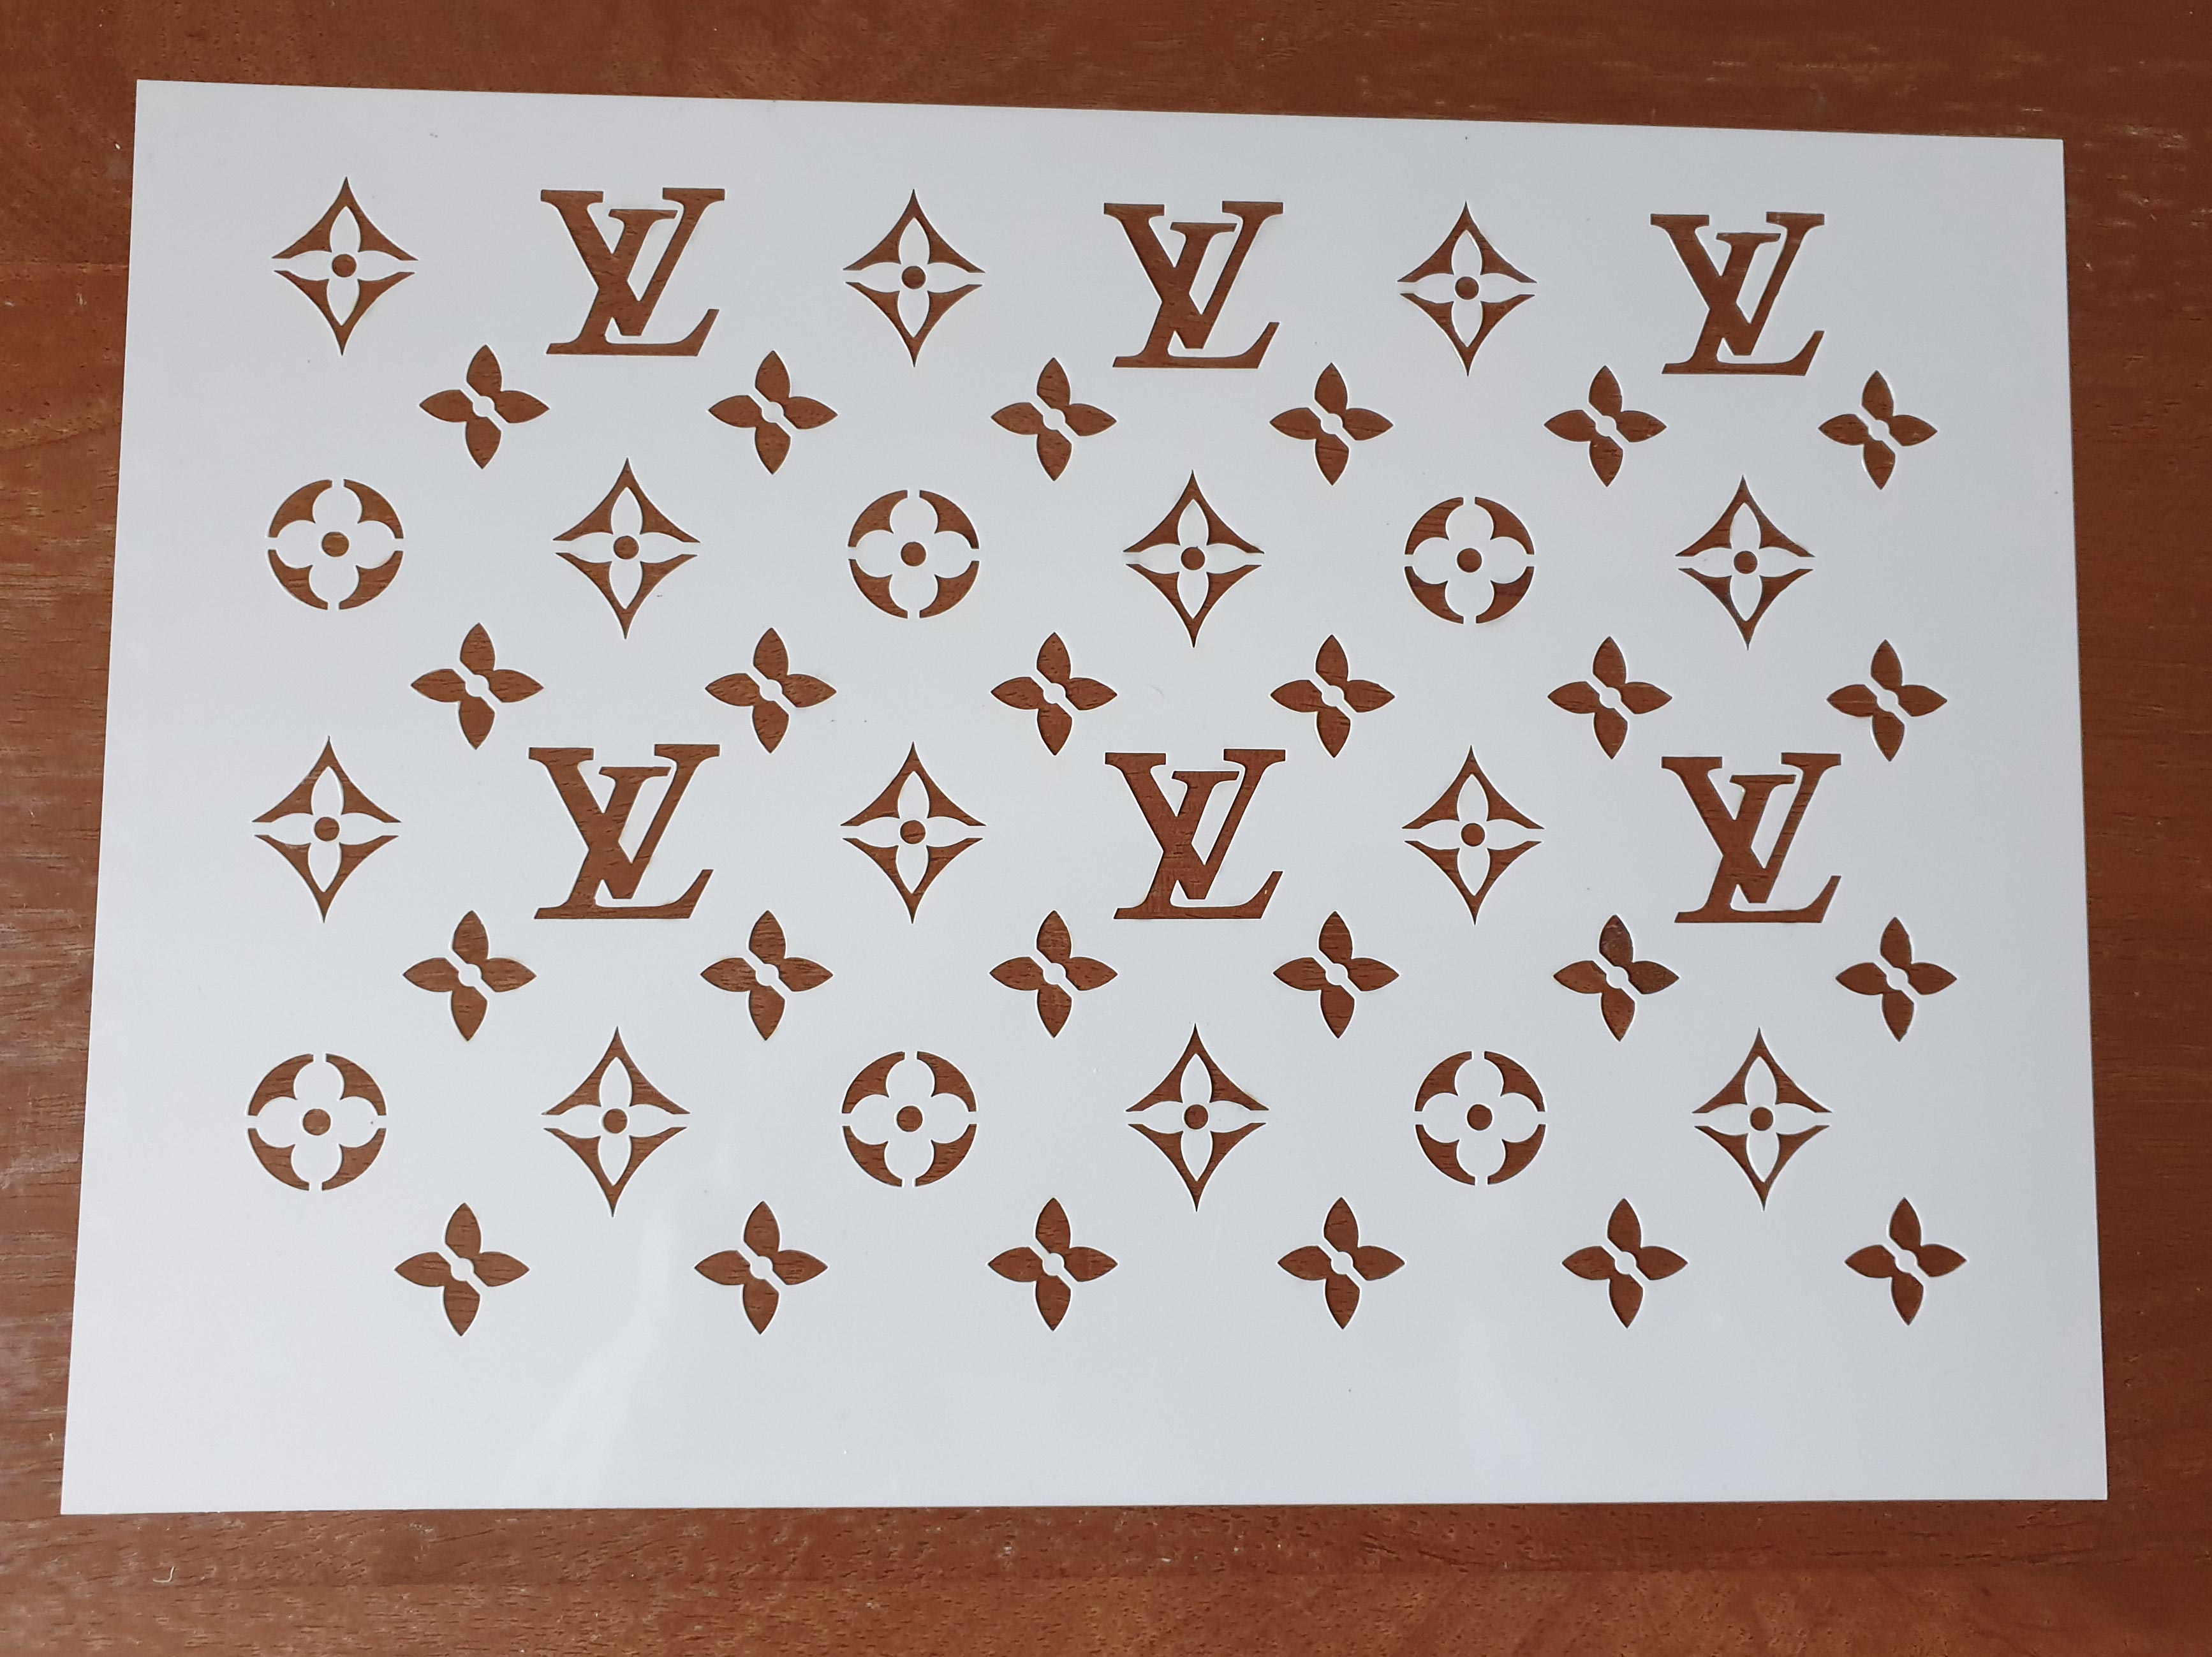 LV Louis Vuitton 1″ Inch Reusable Airbrush Stencil Clear